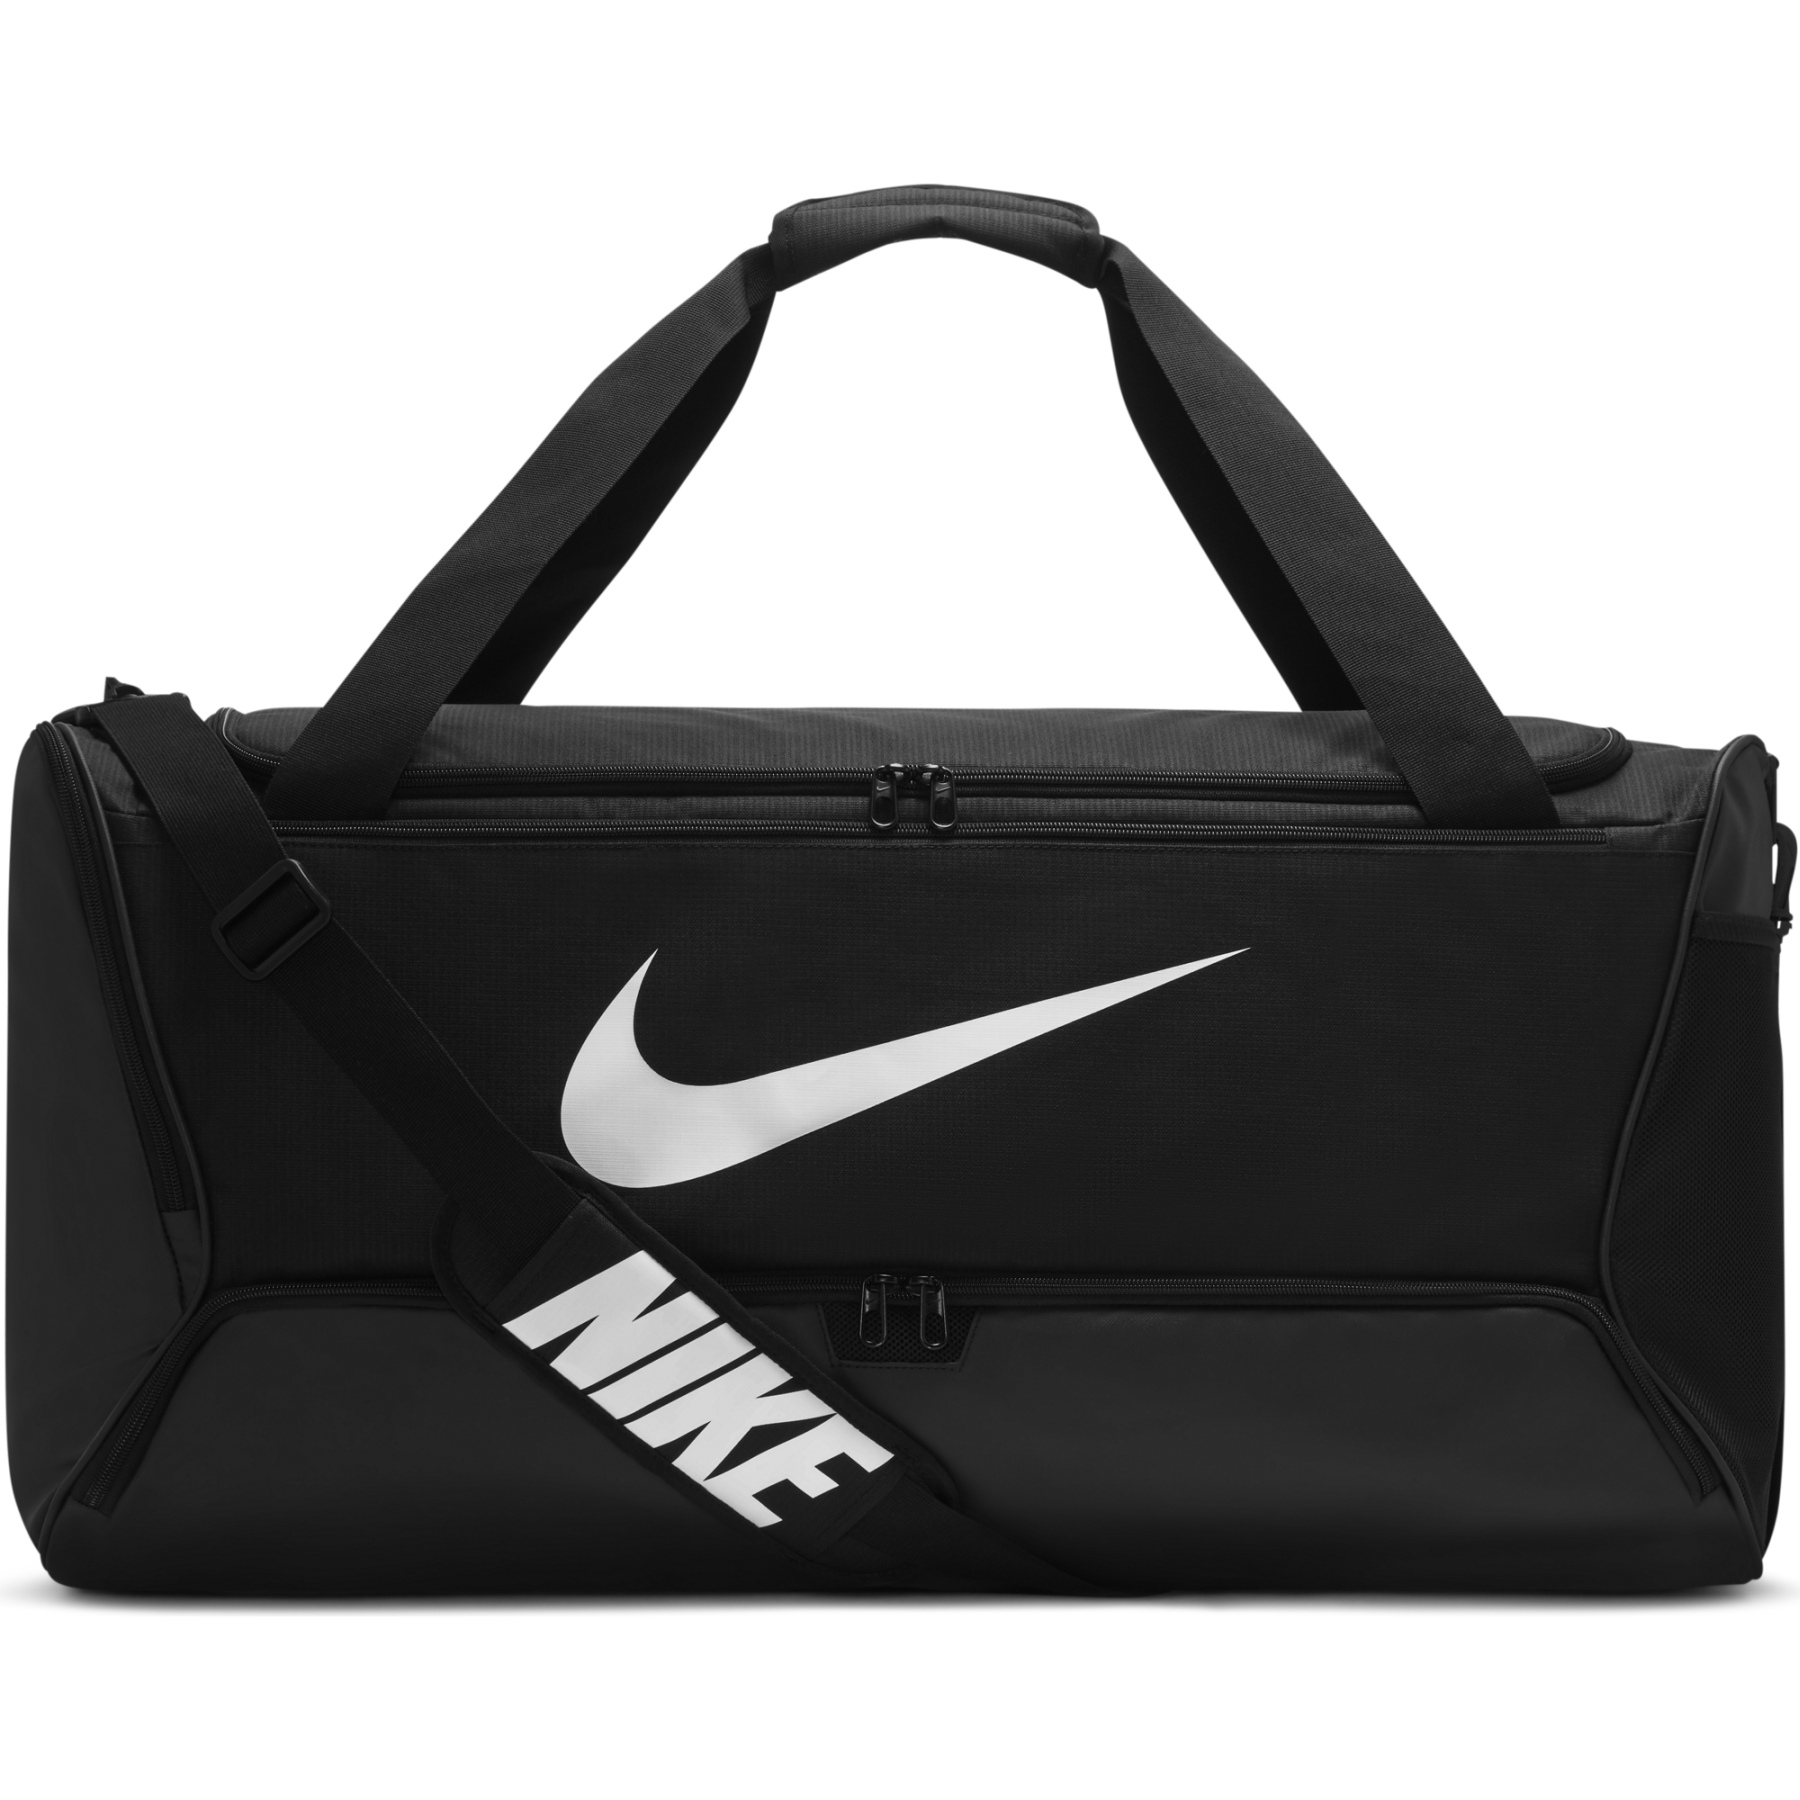 Produktbild von Nike Brasilia 9.5 Trainingstasche (Groß) - schwarz/schwarz/weiss DO9193-010